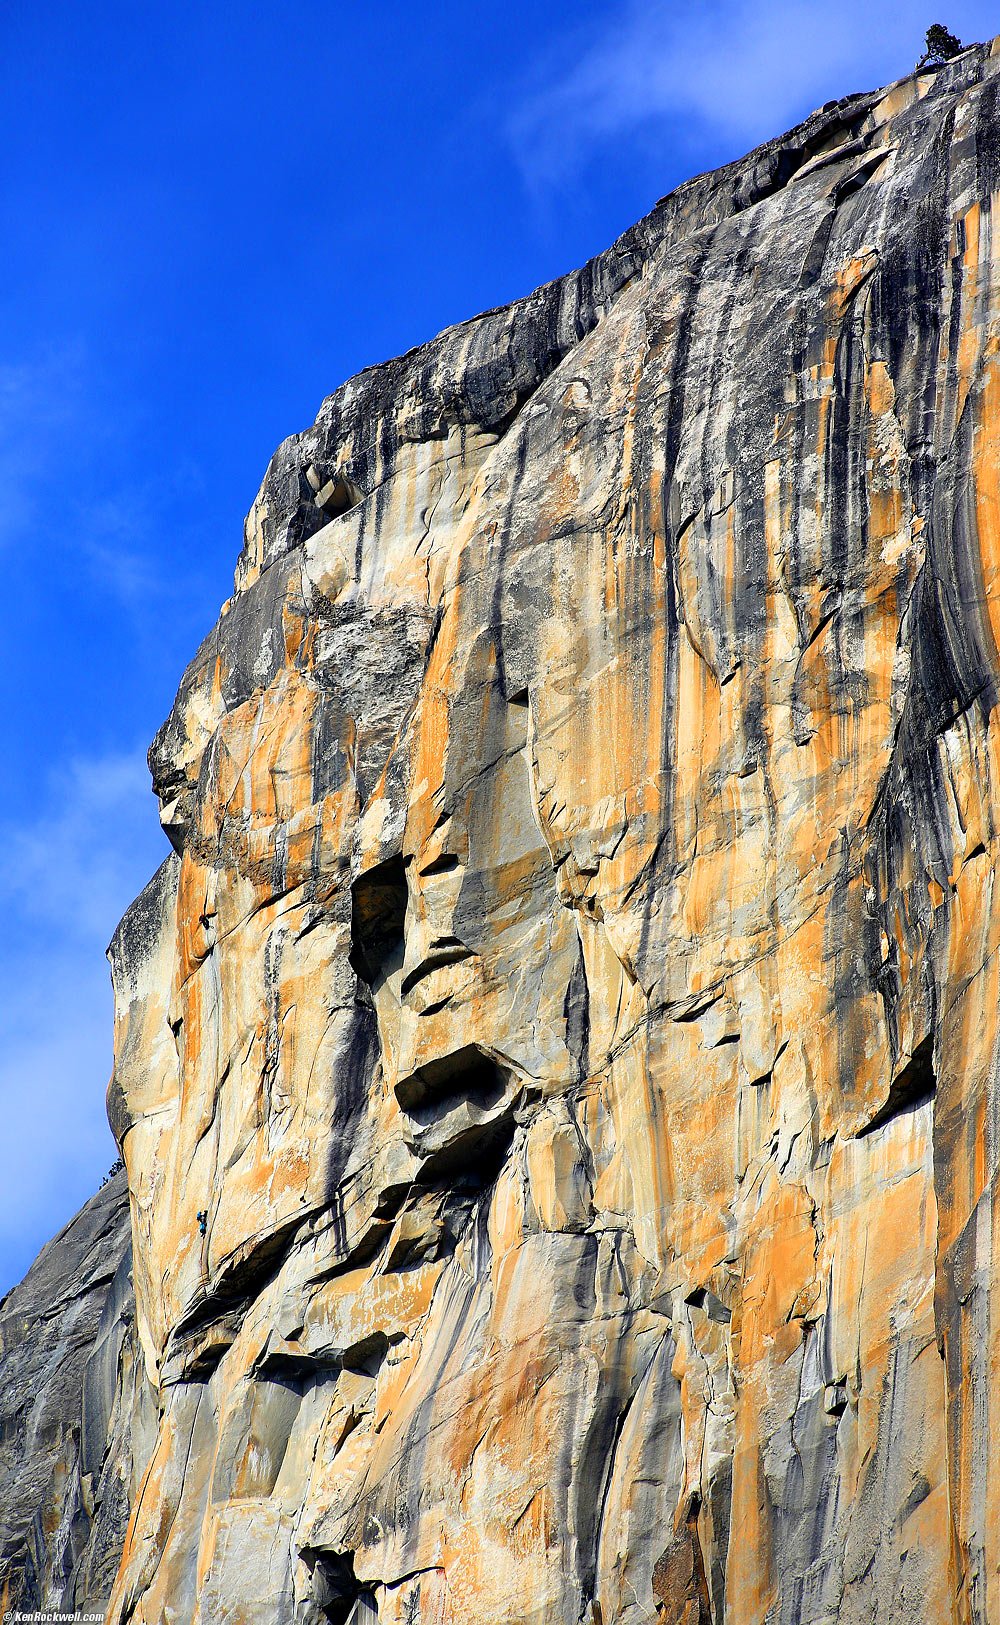 The Face of El Capitan as seen from El Capitan Meadow, Yosemite Valley